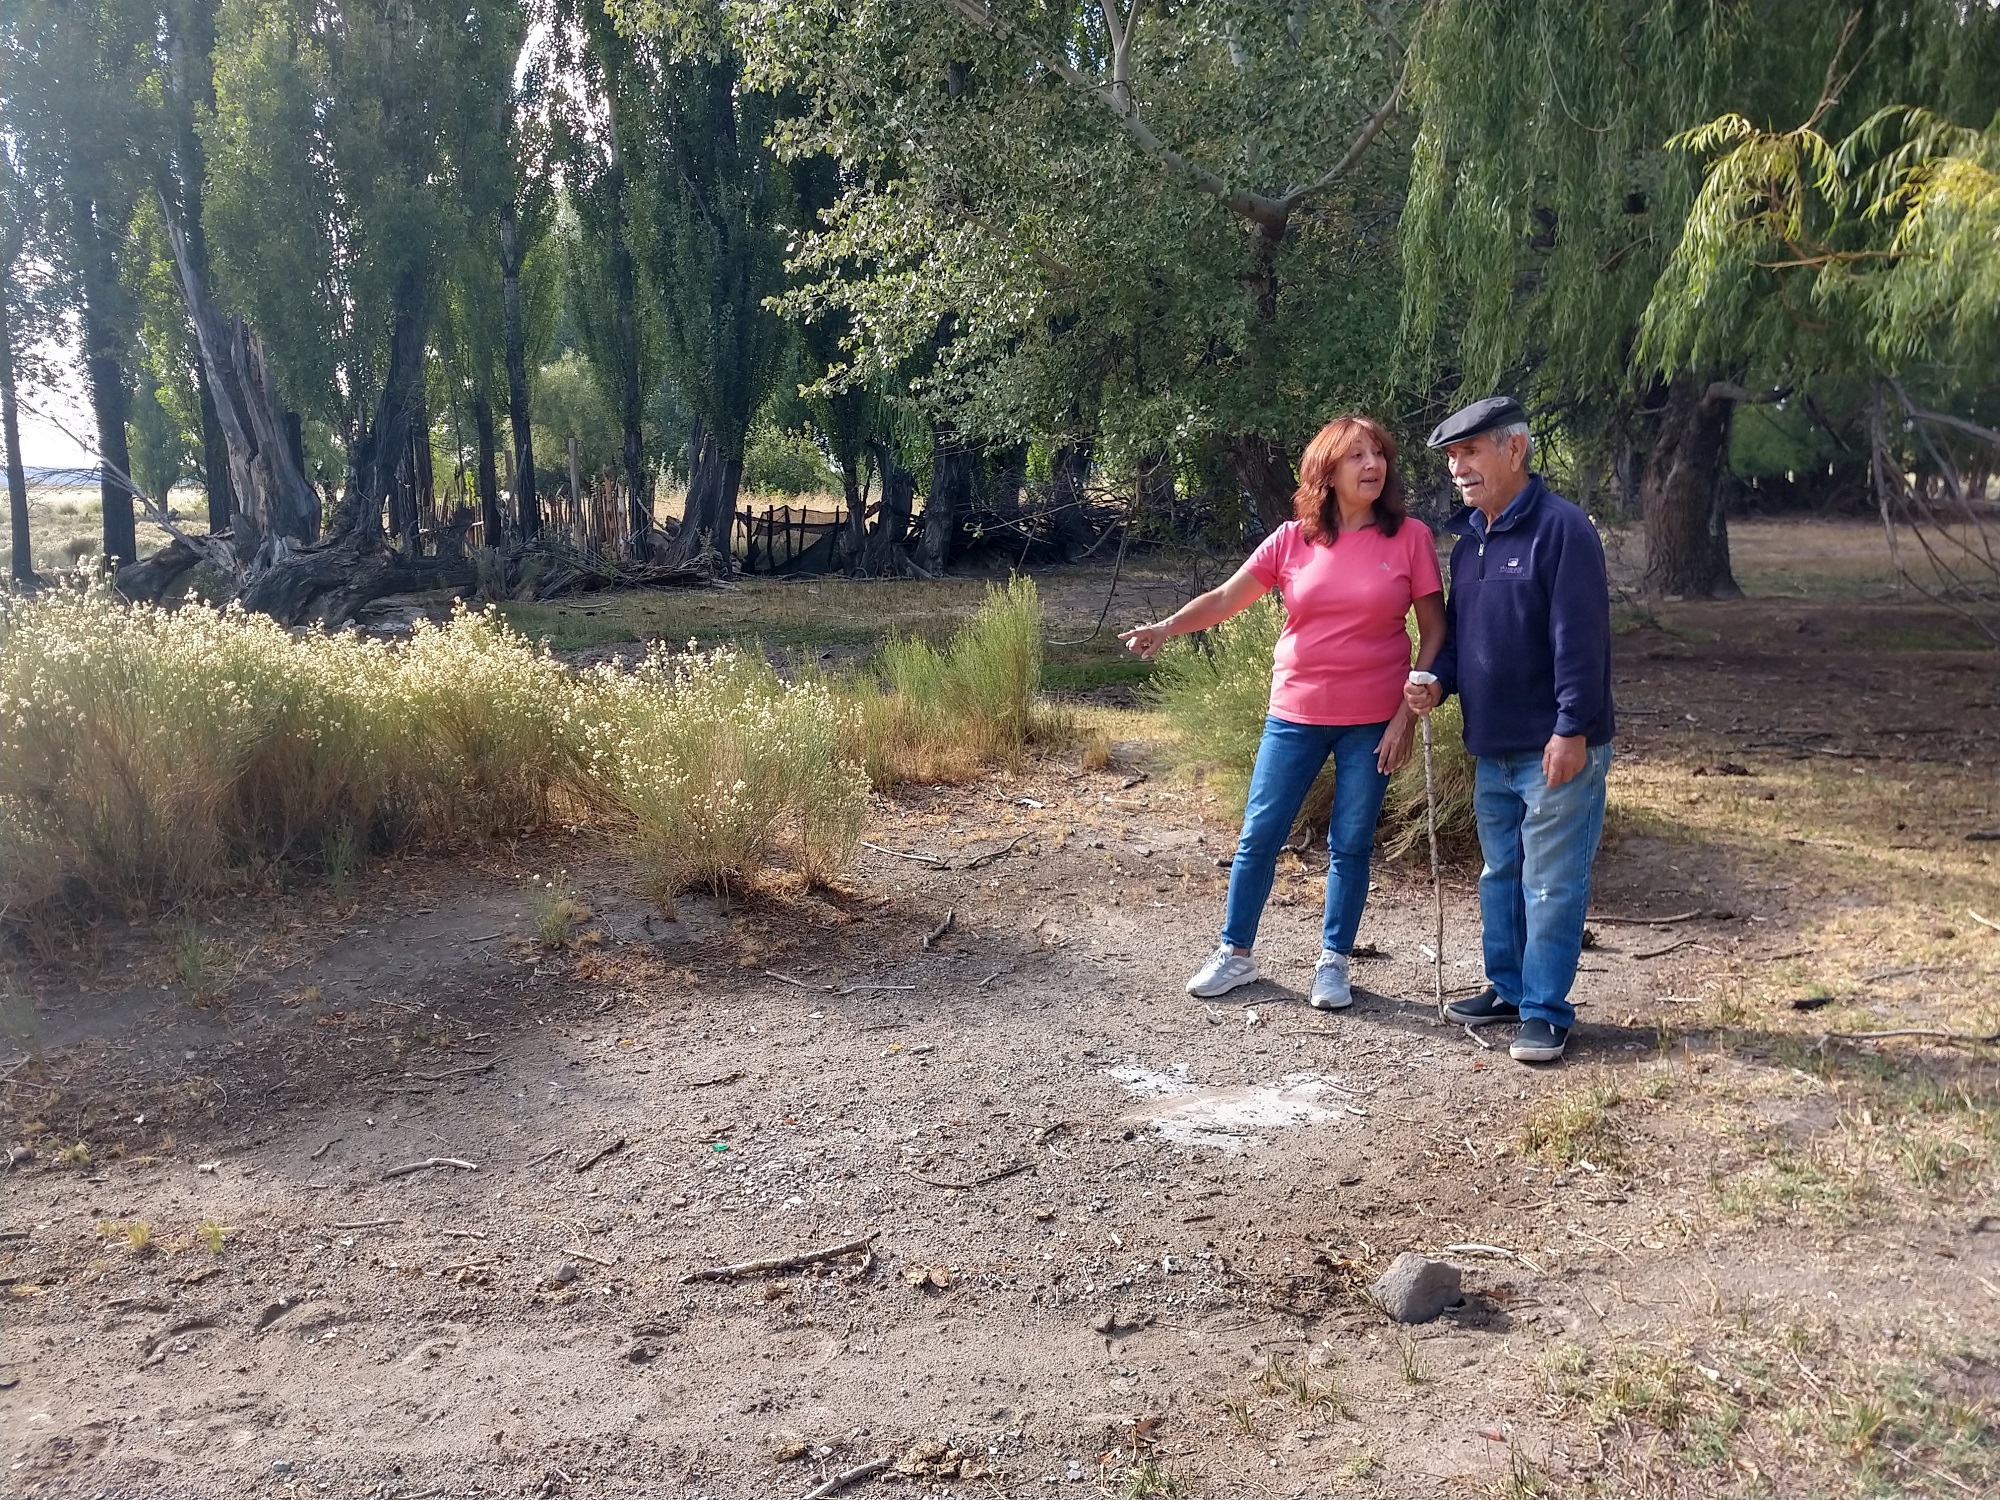 Mónica y Leonel observan el rectángulo de suelo libre, rodeado de pasto, que marcaba el punto donde funcionó el almacén, hecho de adobe. El dato fue ratificado por la Declaración 2250 de la Legislatura neuquina. Foto: Melina Ortiz Campos.